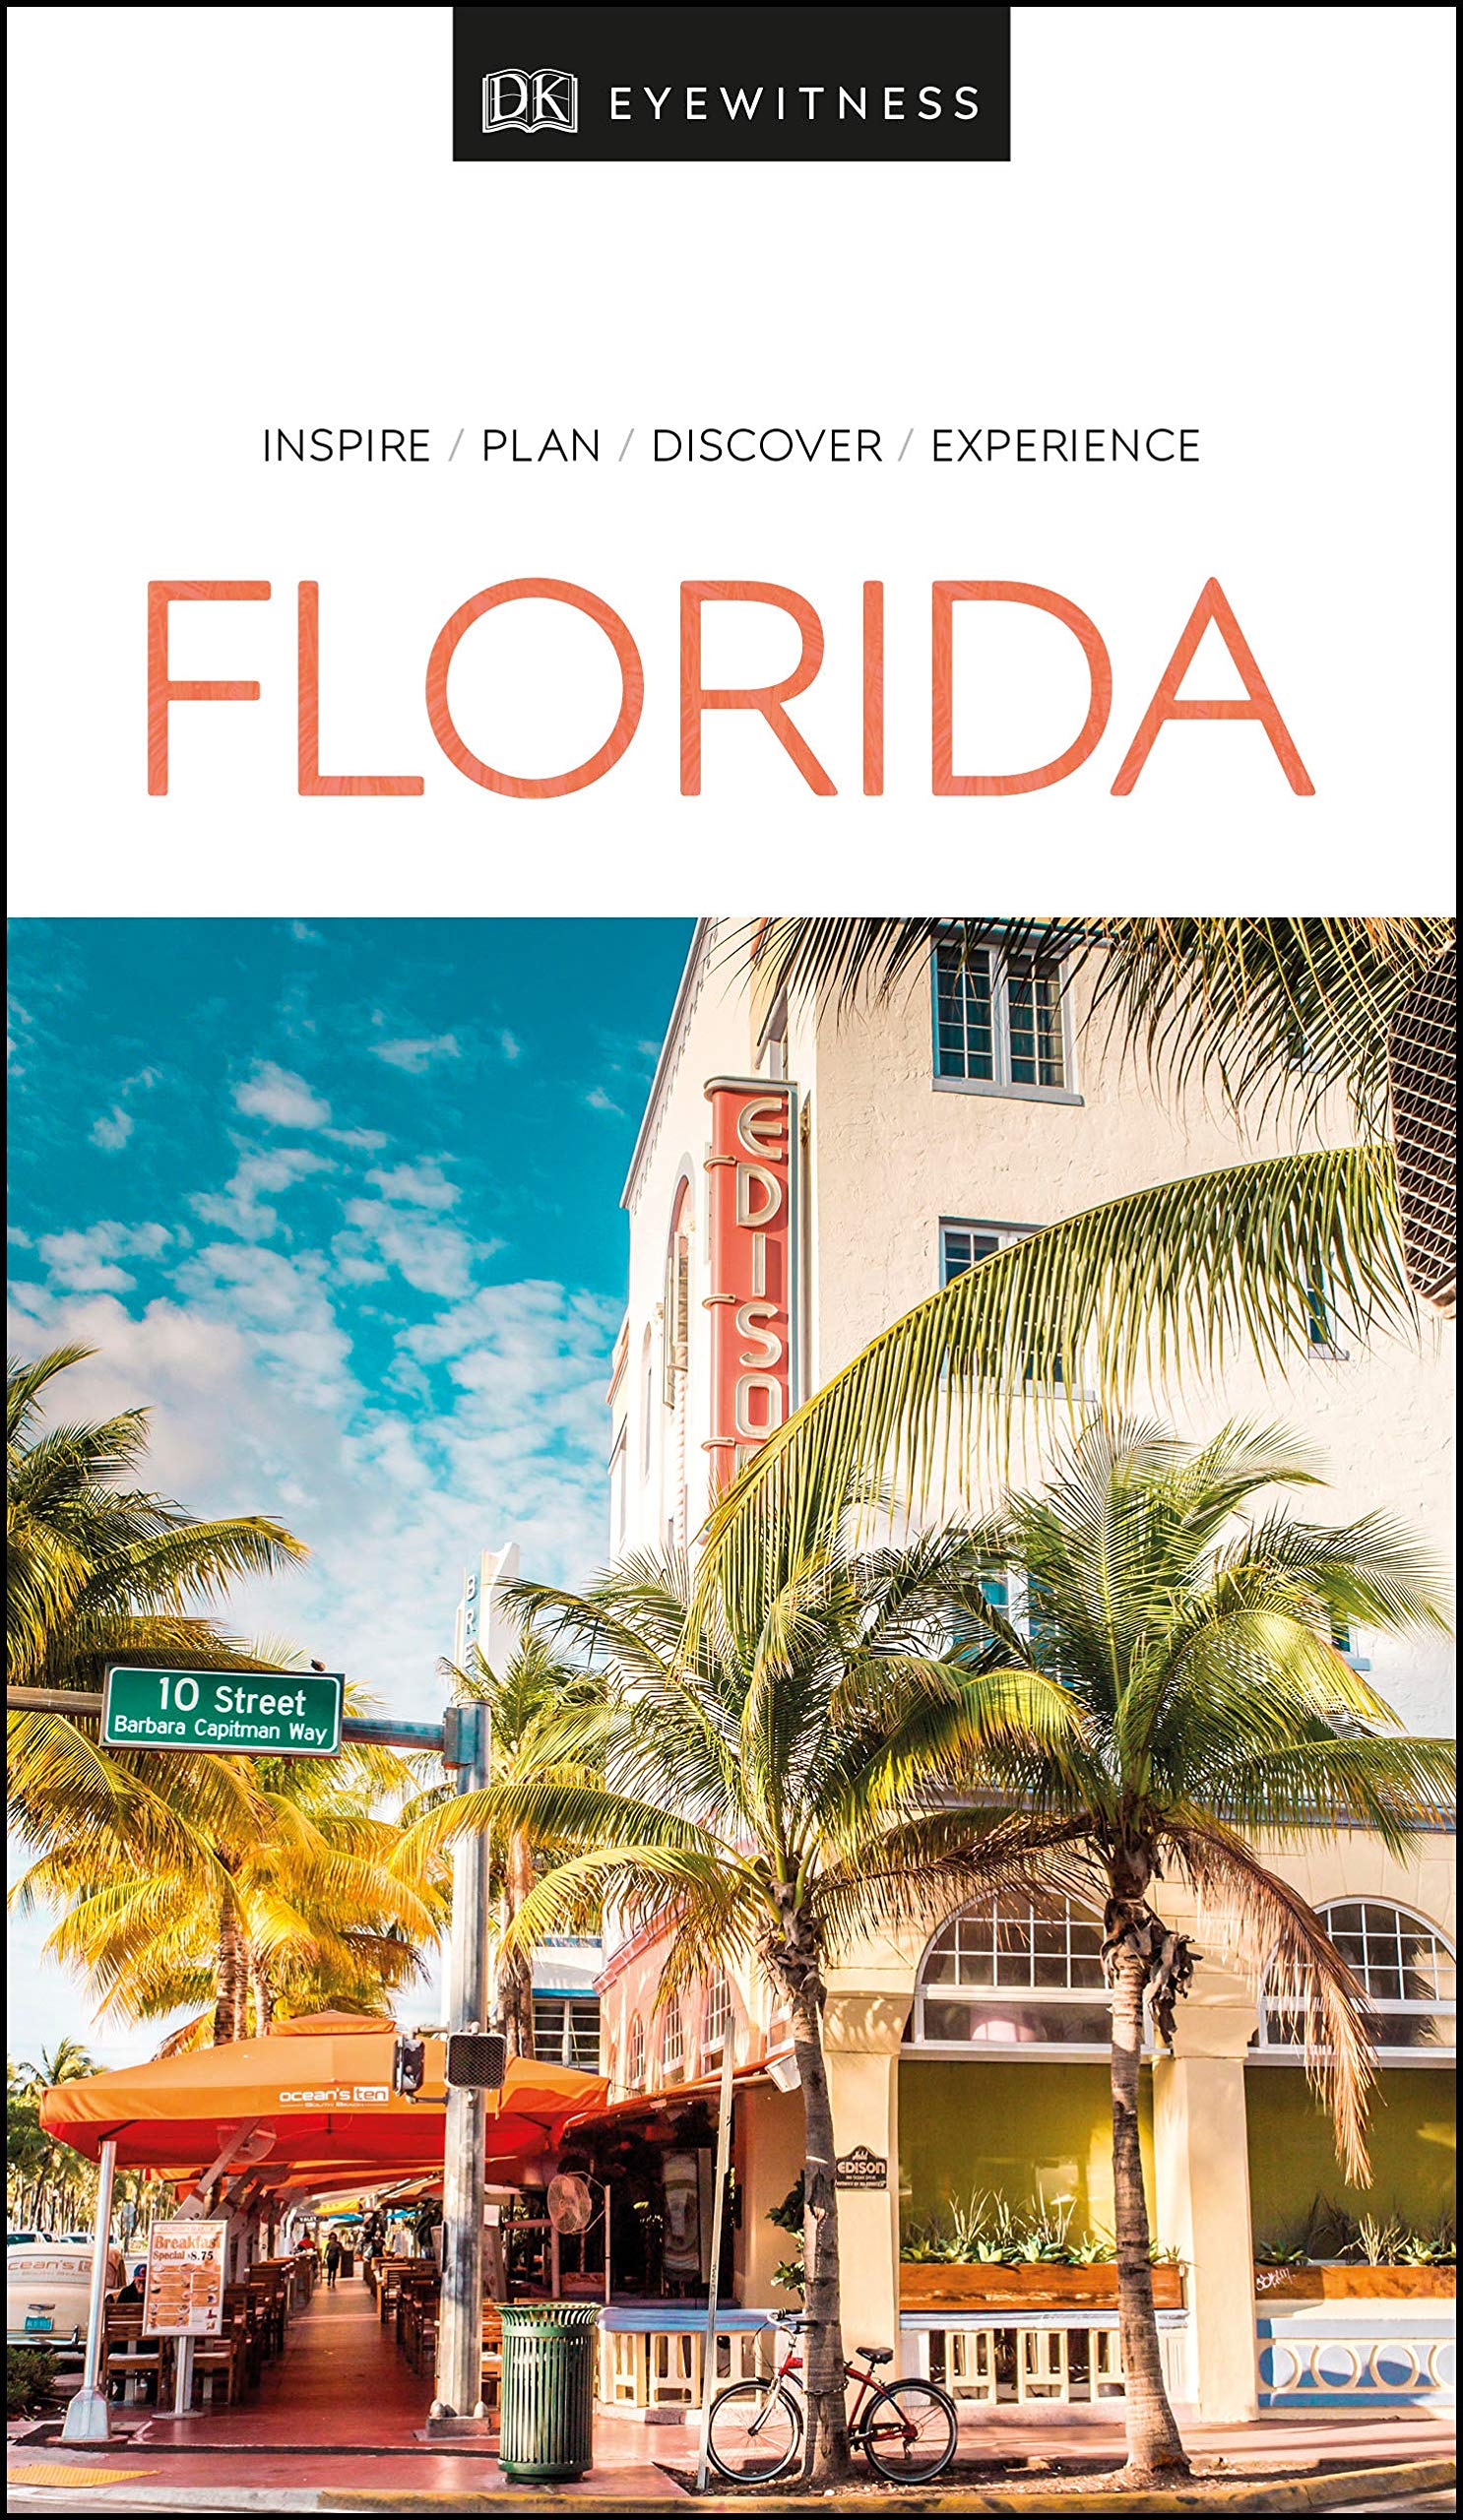 DK Eyewitness Travel Guide Florida